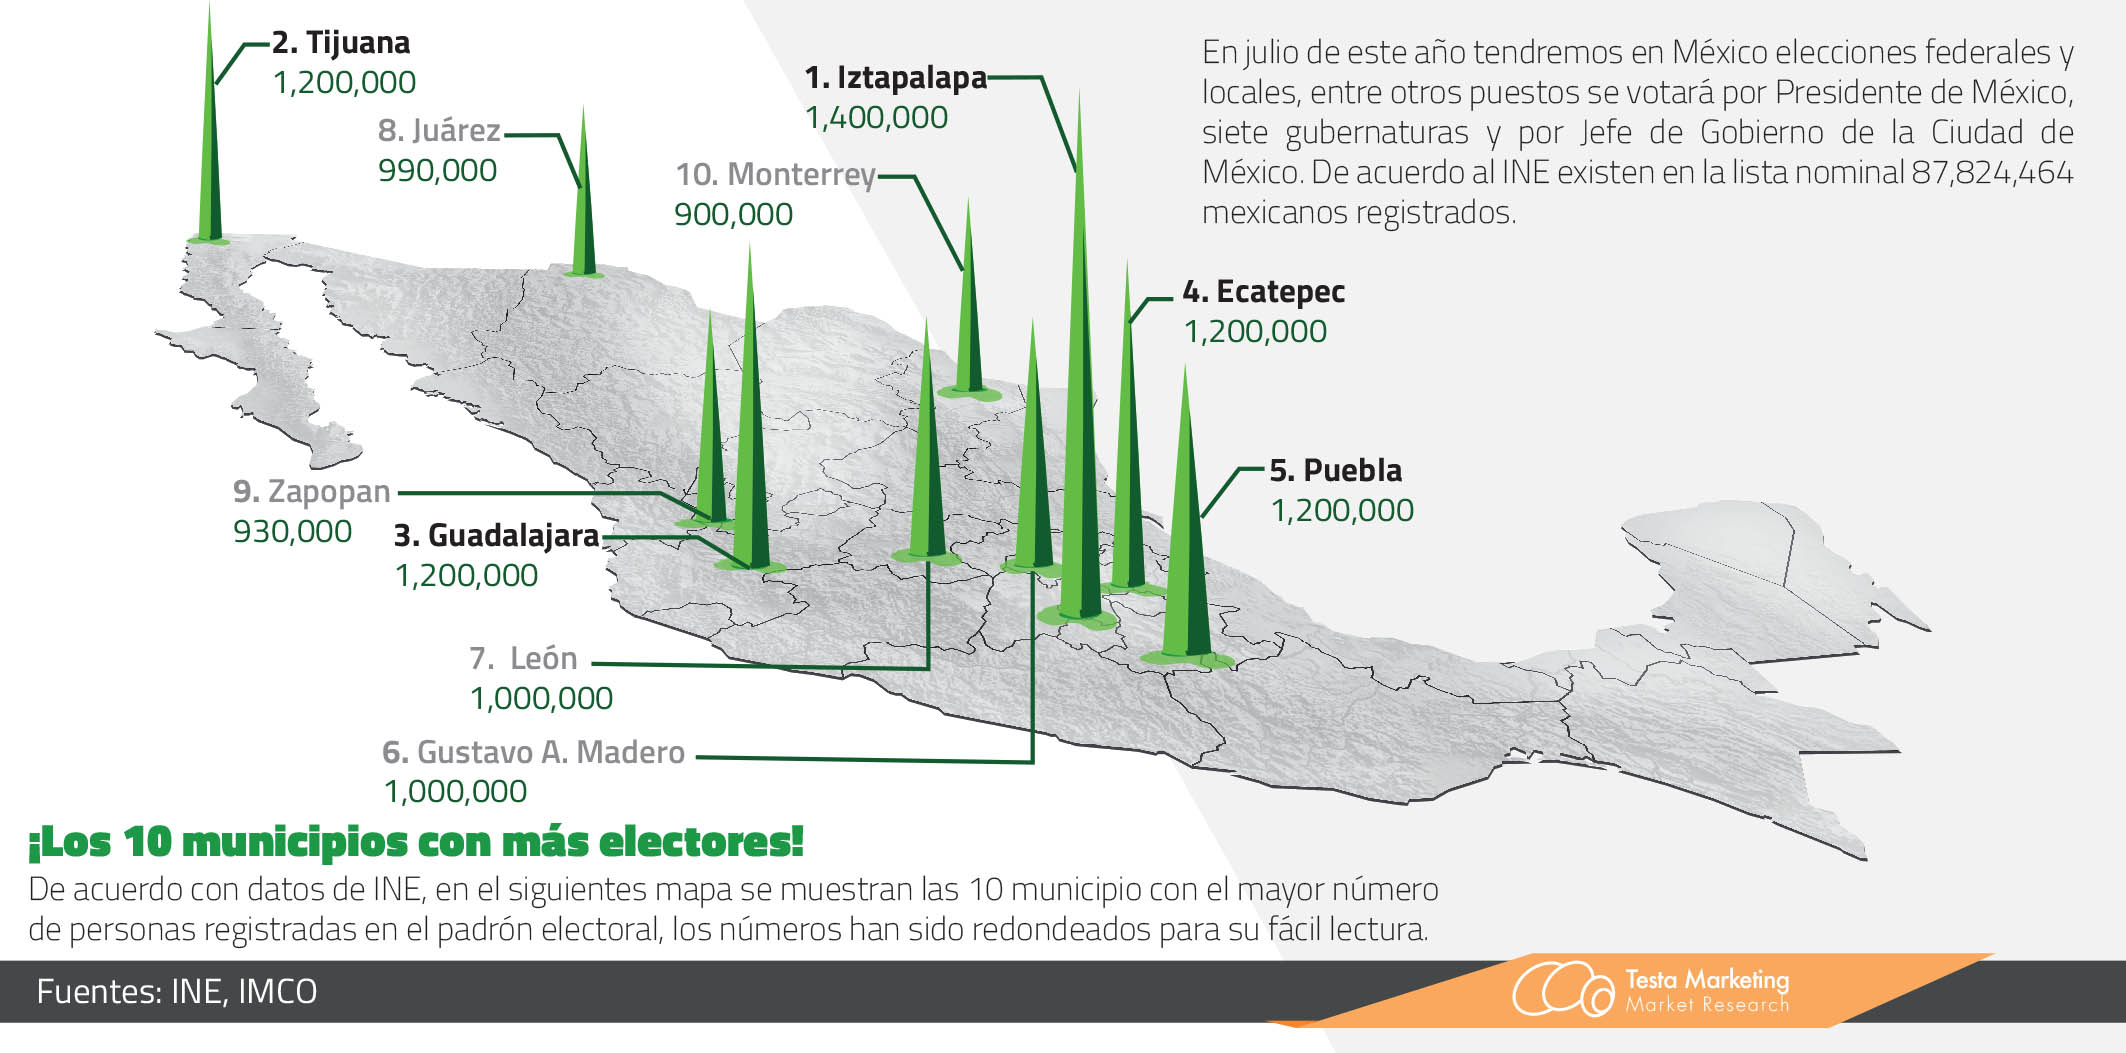 Los 10 municipios con más electores en México